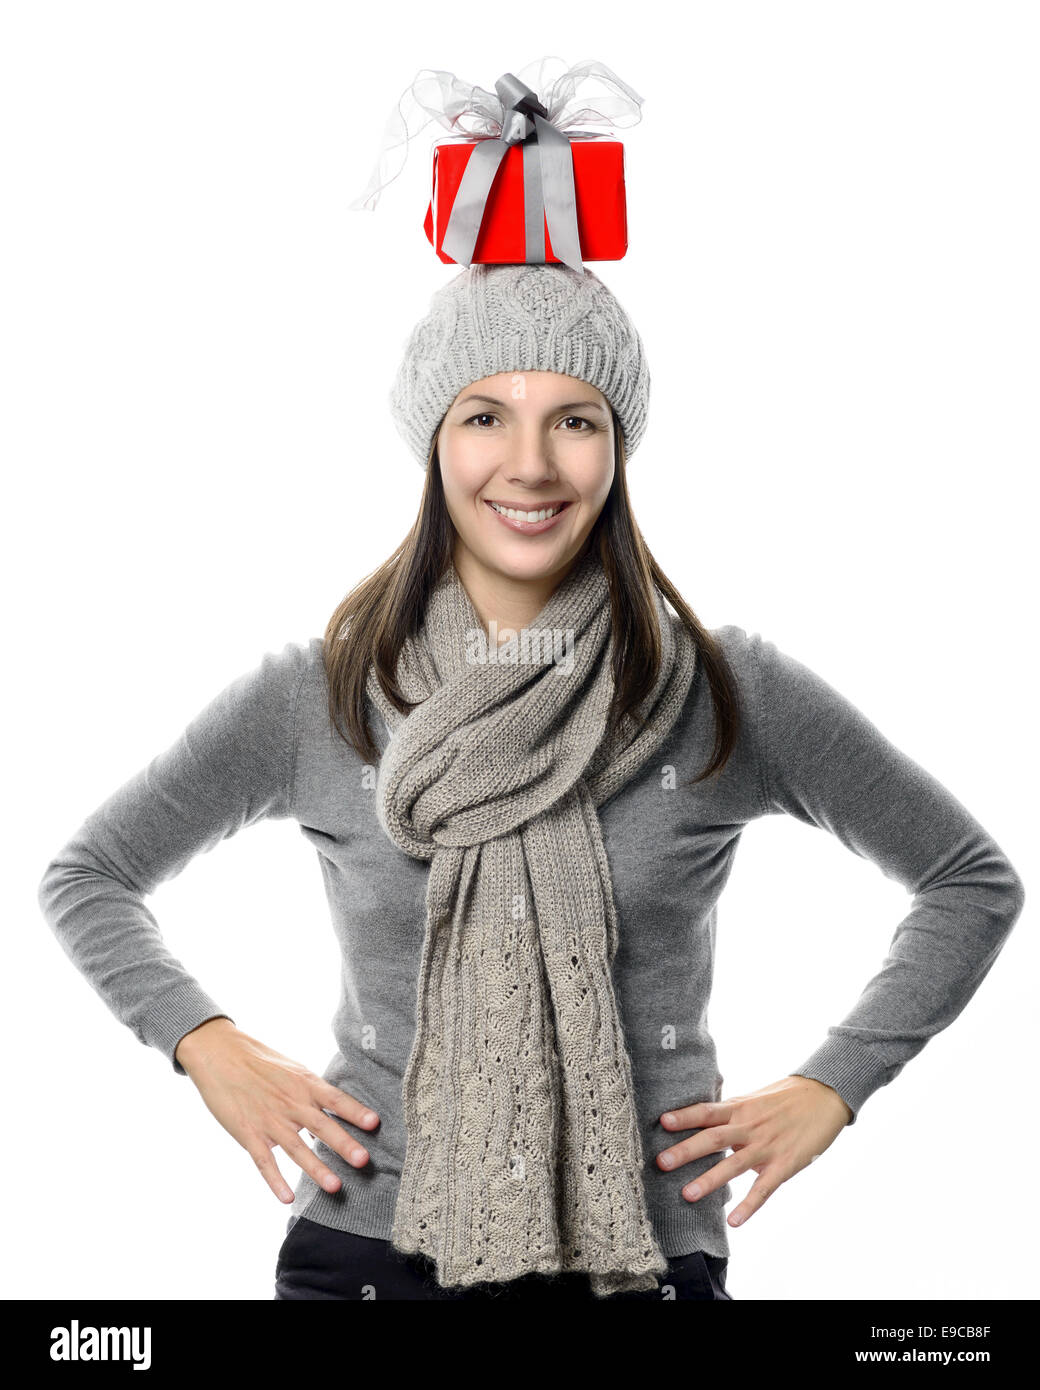 Glücklich attraktive junge Frau in Wintermode Ausgleich ein Weihnachtsgeschenk auf ihrem Kopf stehend in die Kamera schaut Stockfoto